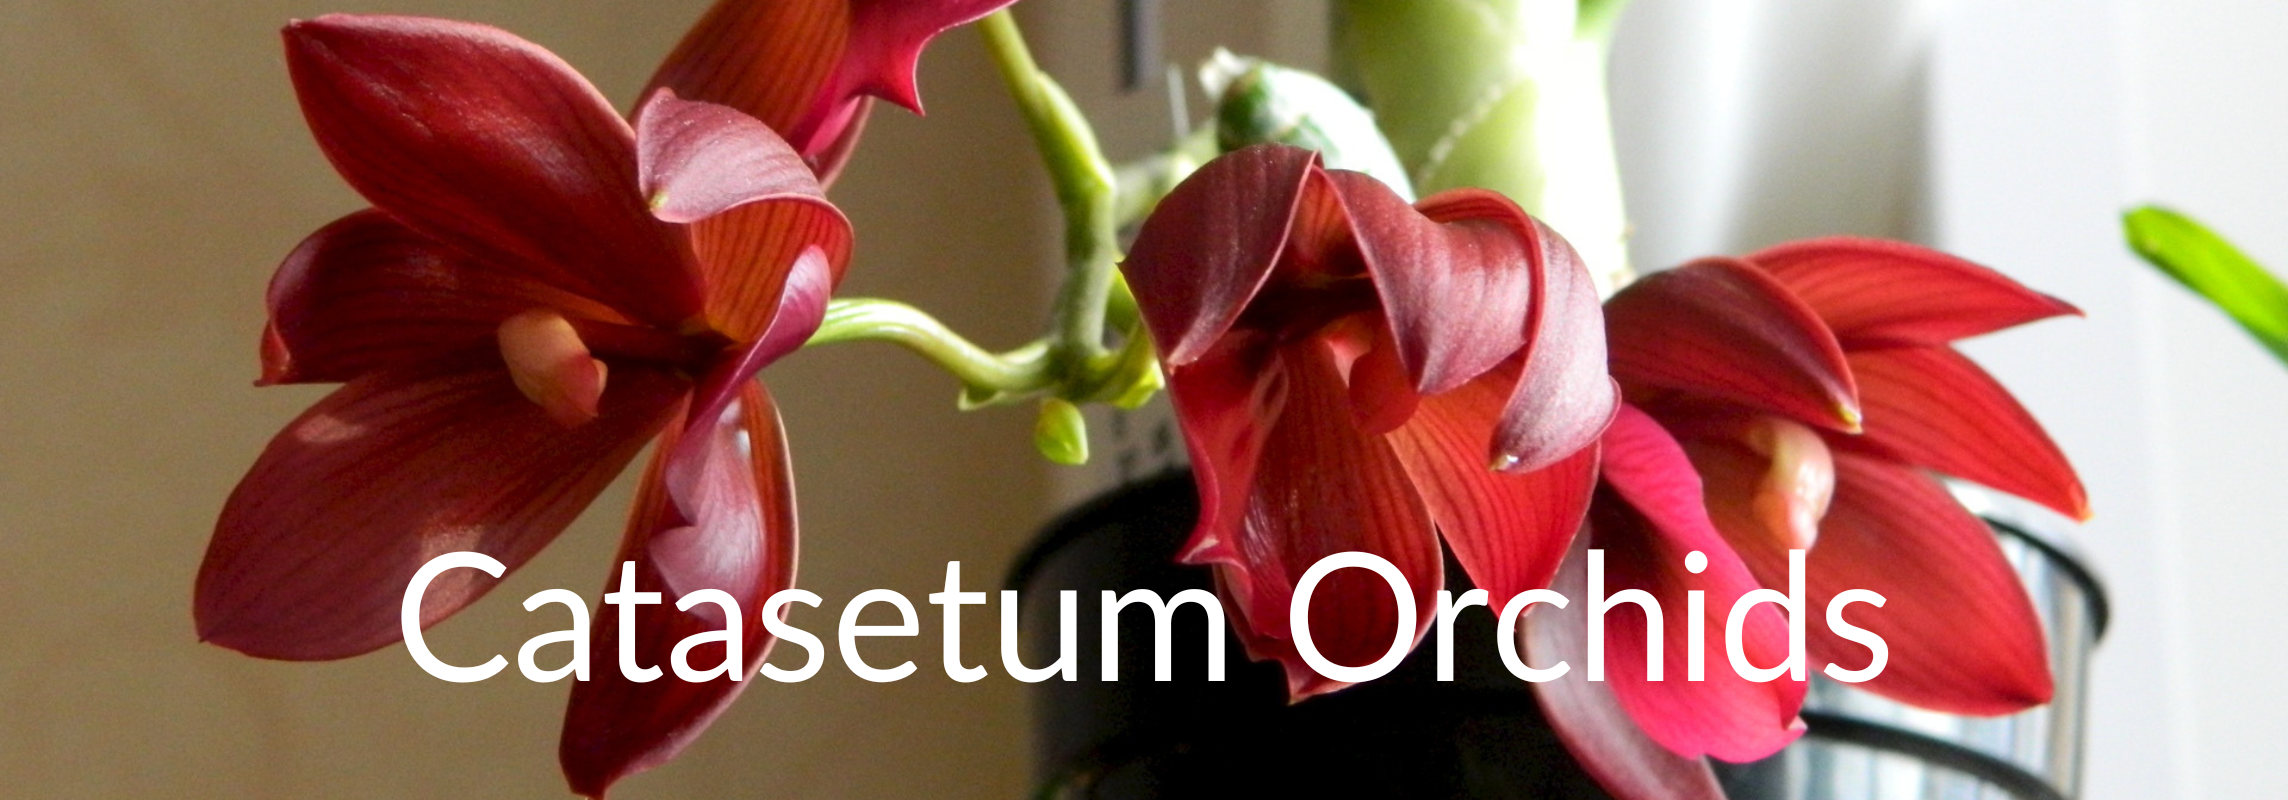 catasetum orchids